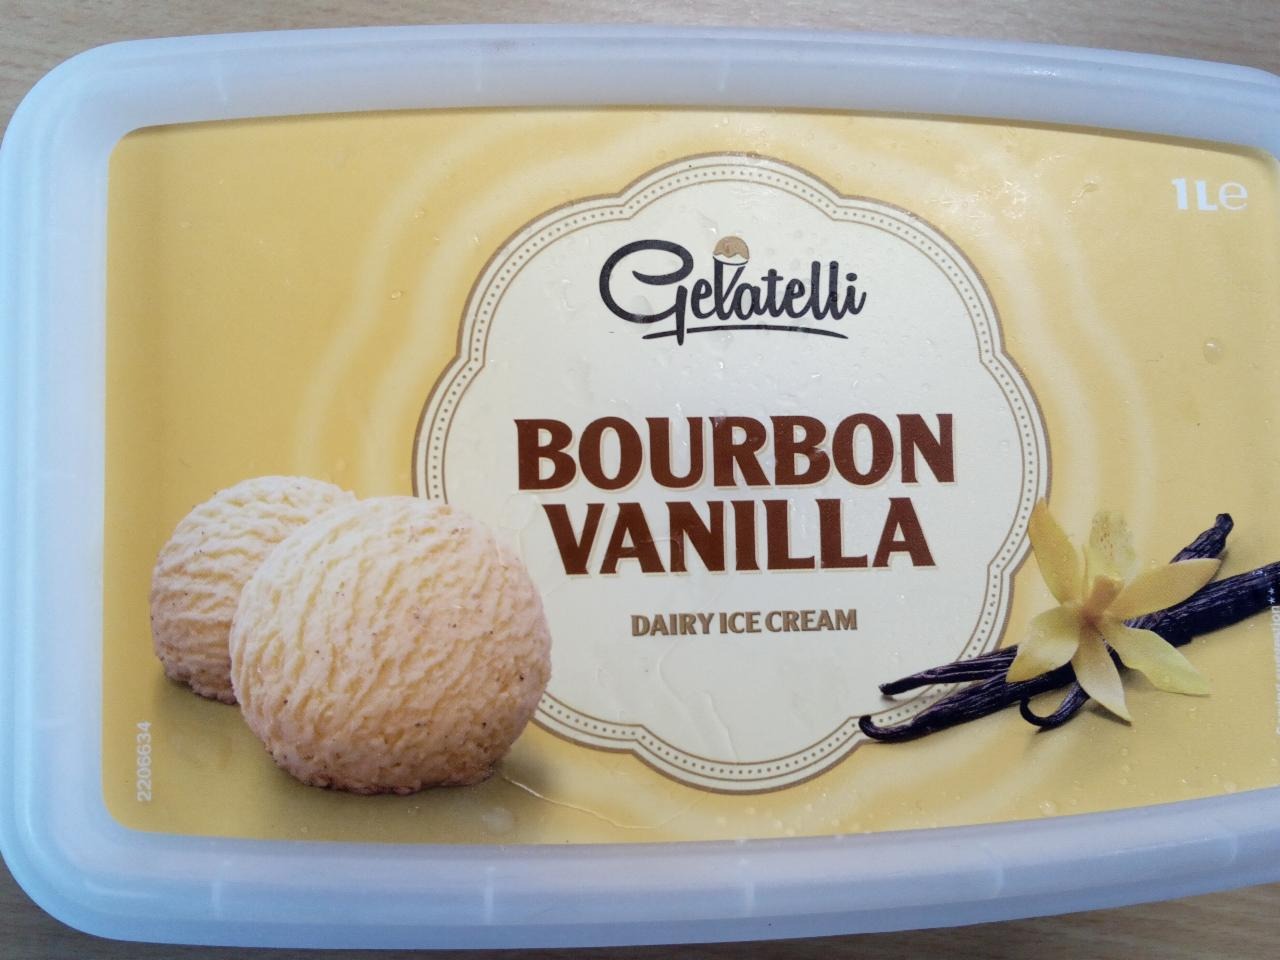 Képek - Fagylalt bourbon vanilla Gelatelli